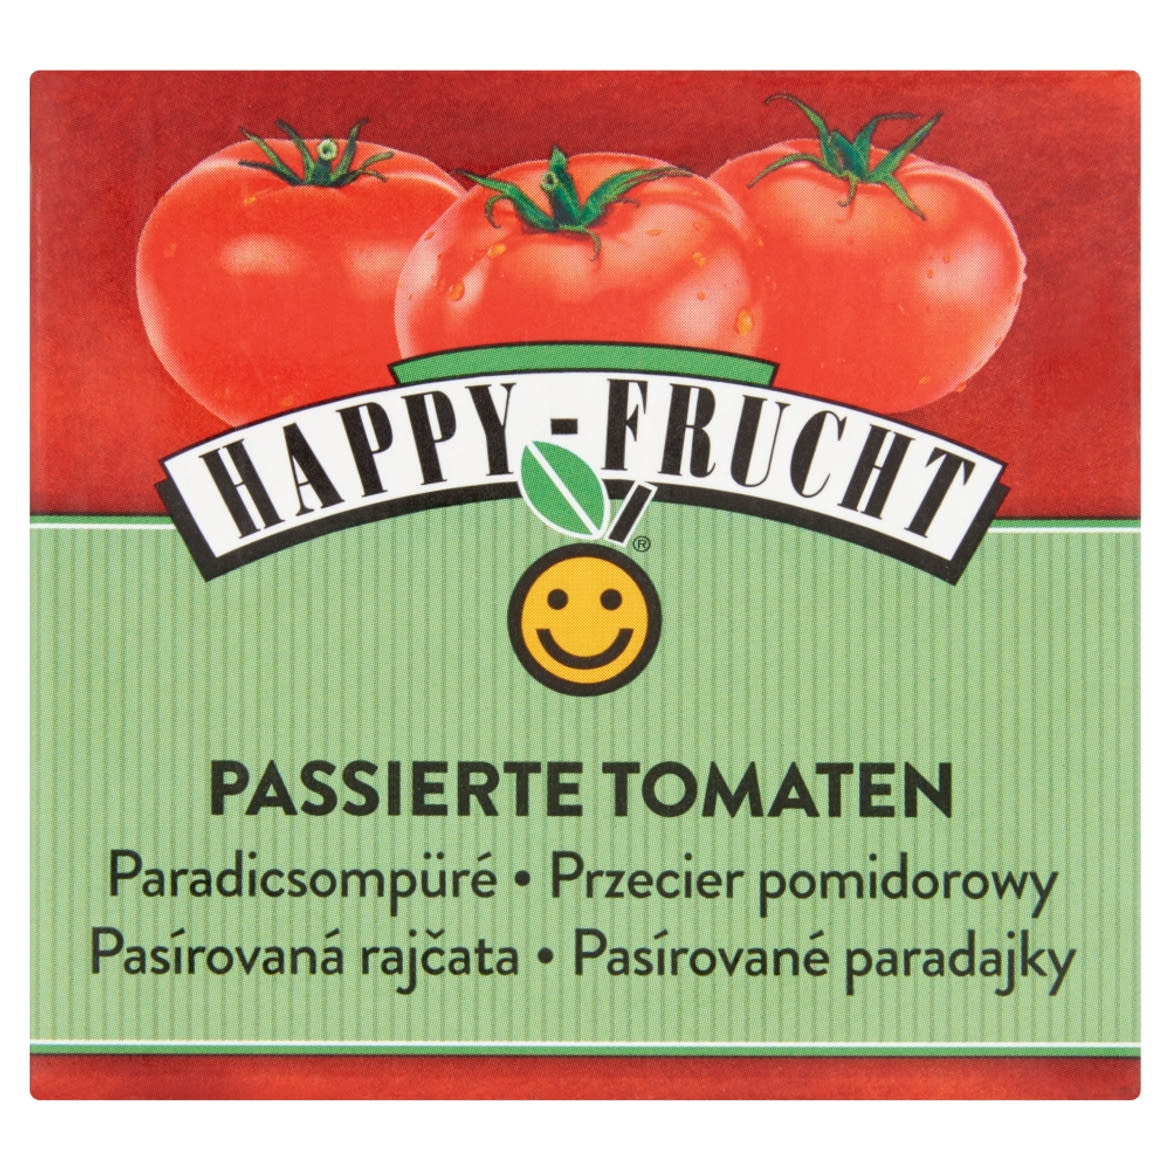 Happy Frucht paradicsompüré